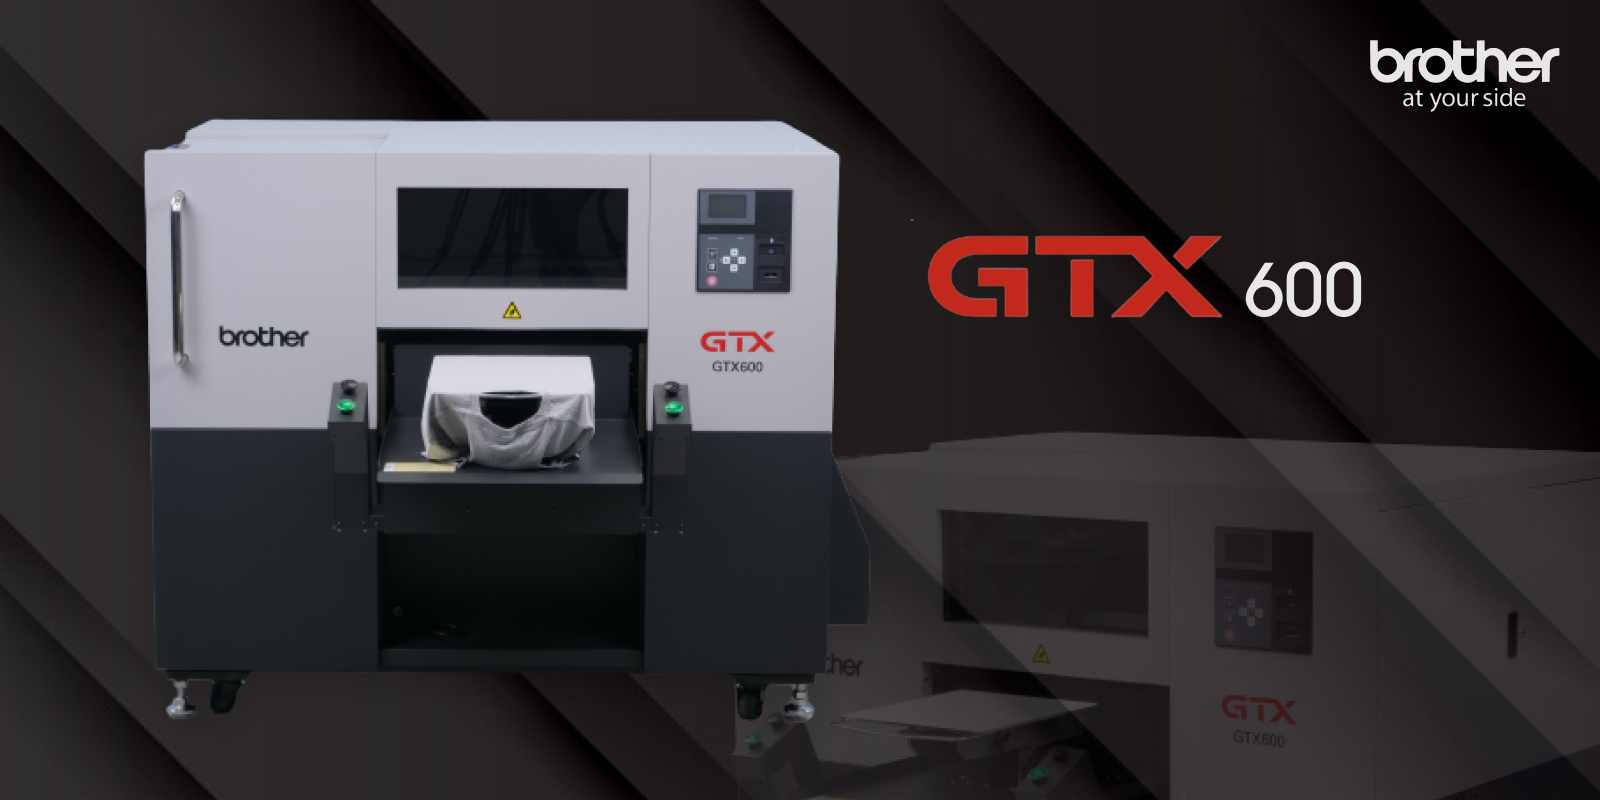 Brother GTX 600 Endüstriyel Baskılı Giyisi ve T-shirt Üretimindeki En Yüksek Standartları Belirliyor.